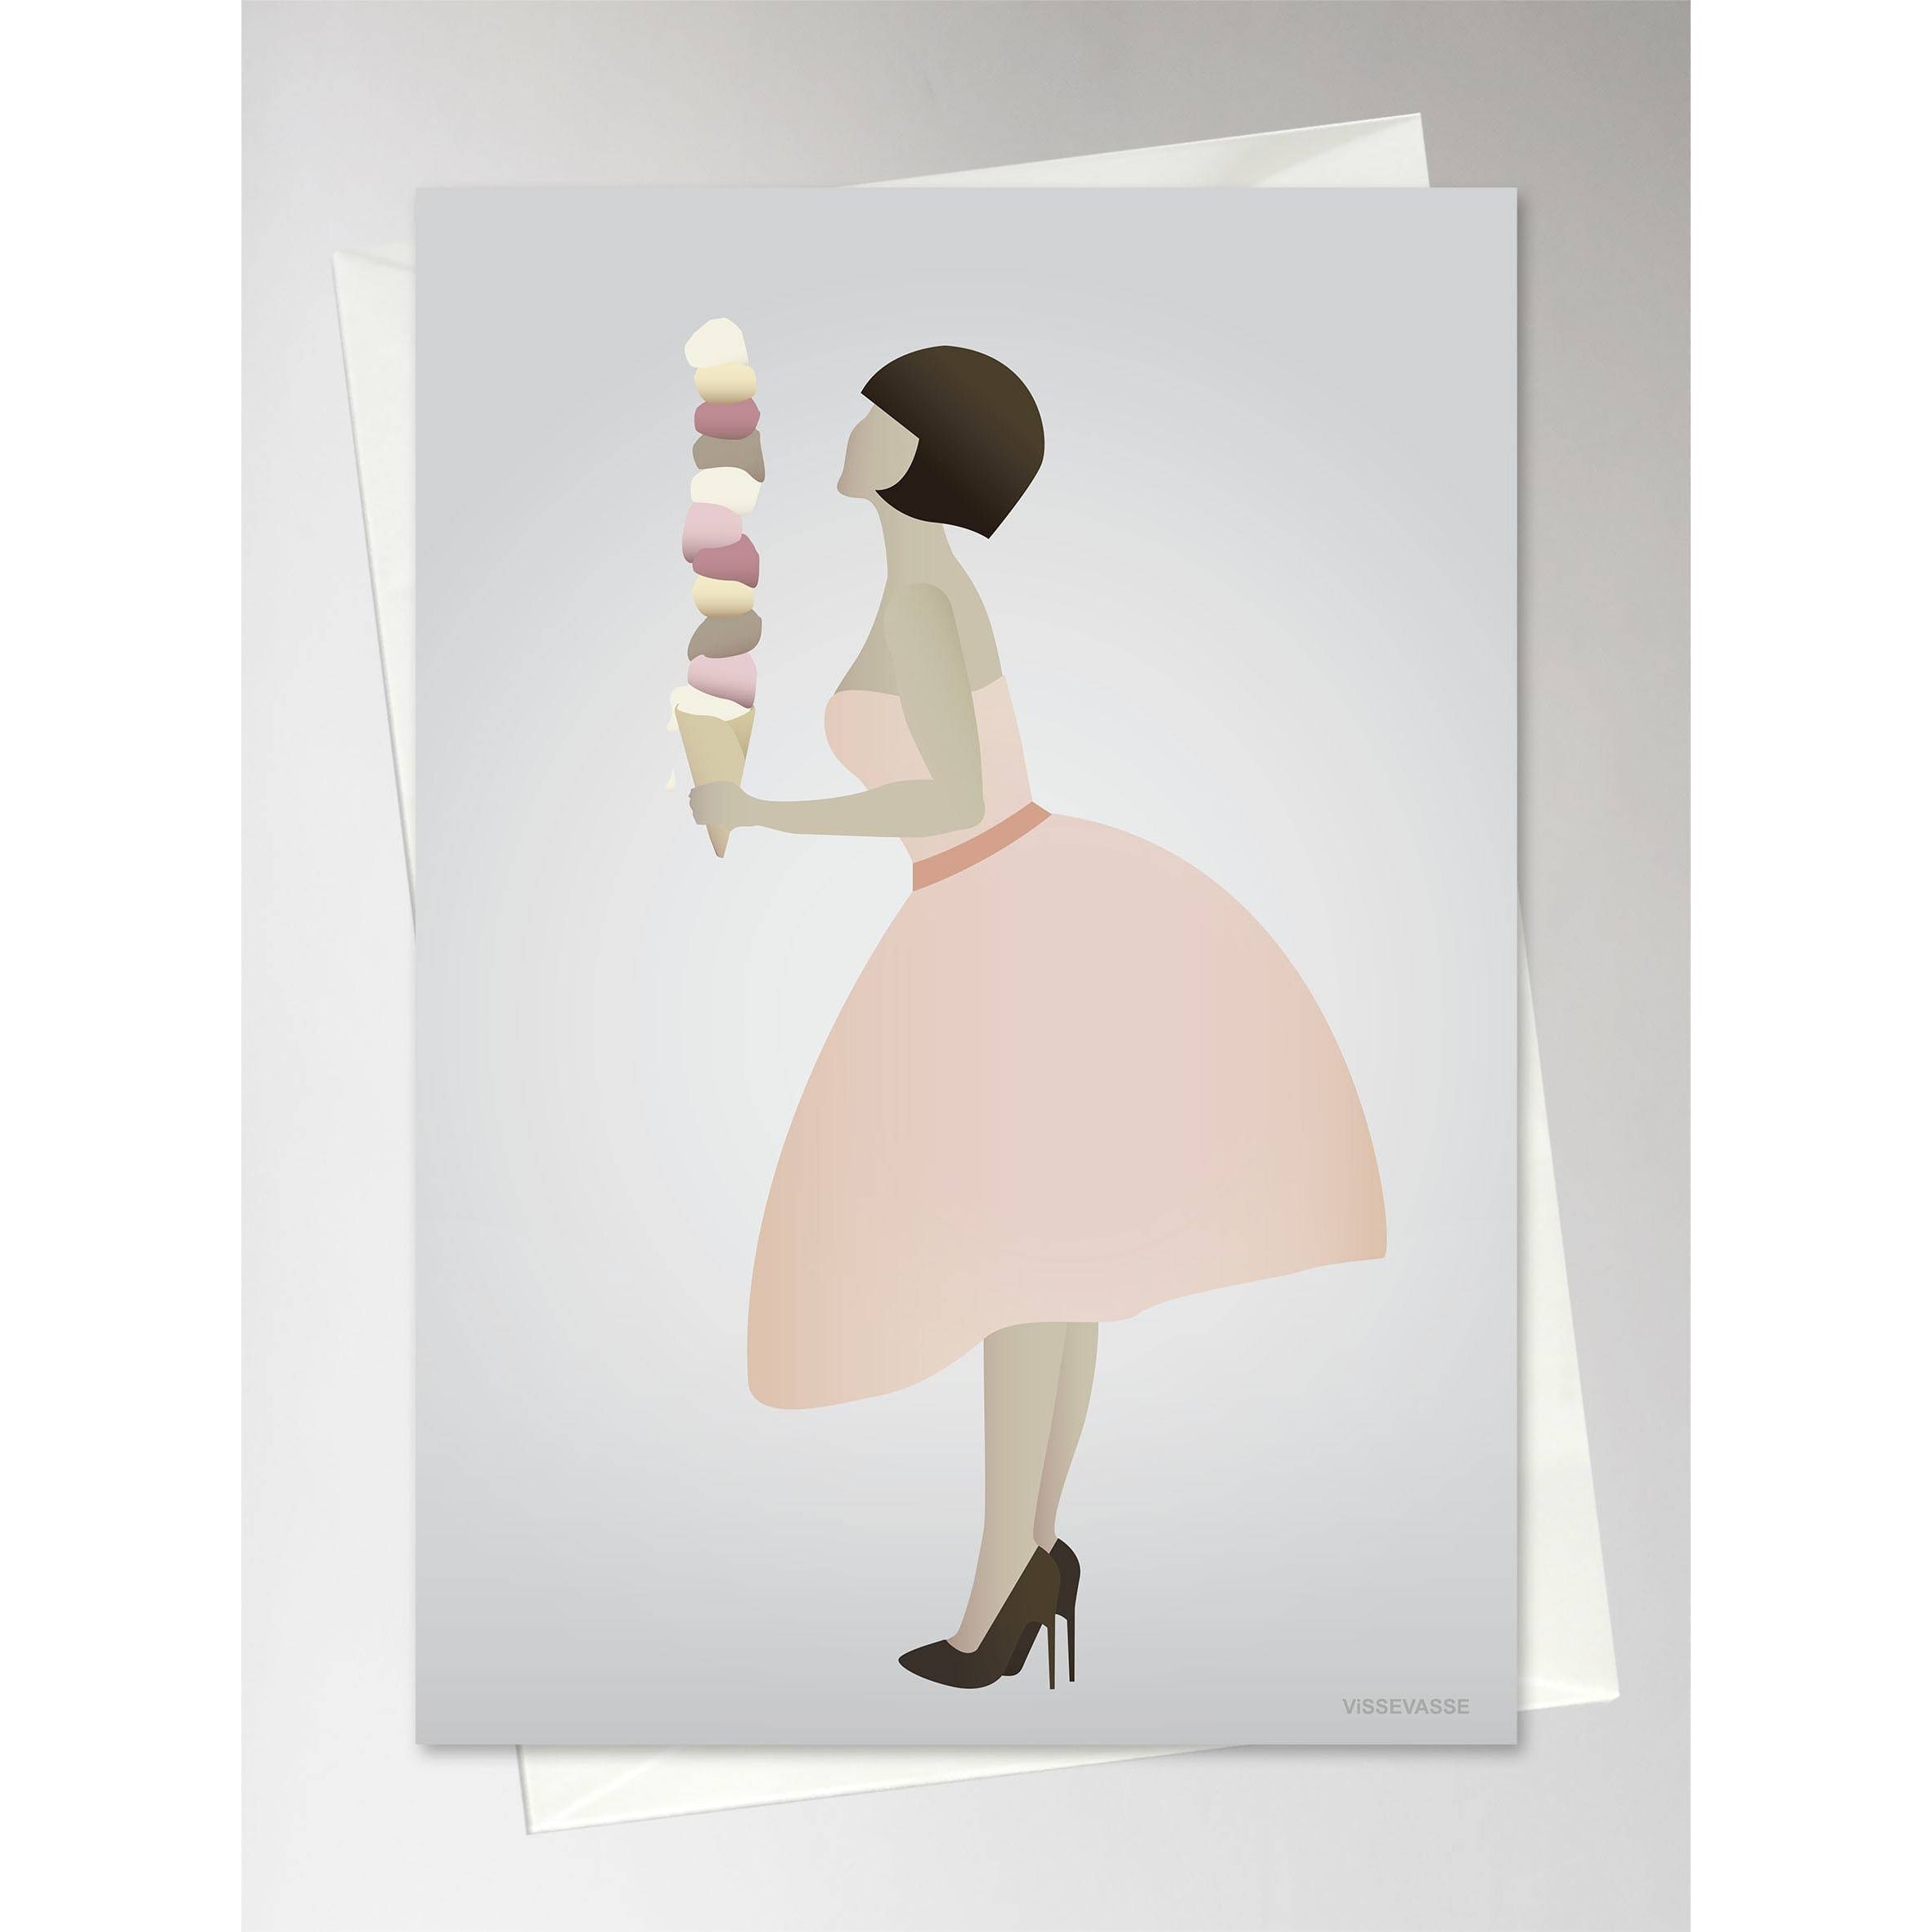 Pozřební karta Vissevasse Ice Cream Lady, 10,5x15 cm